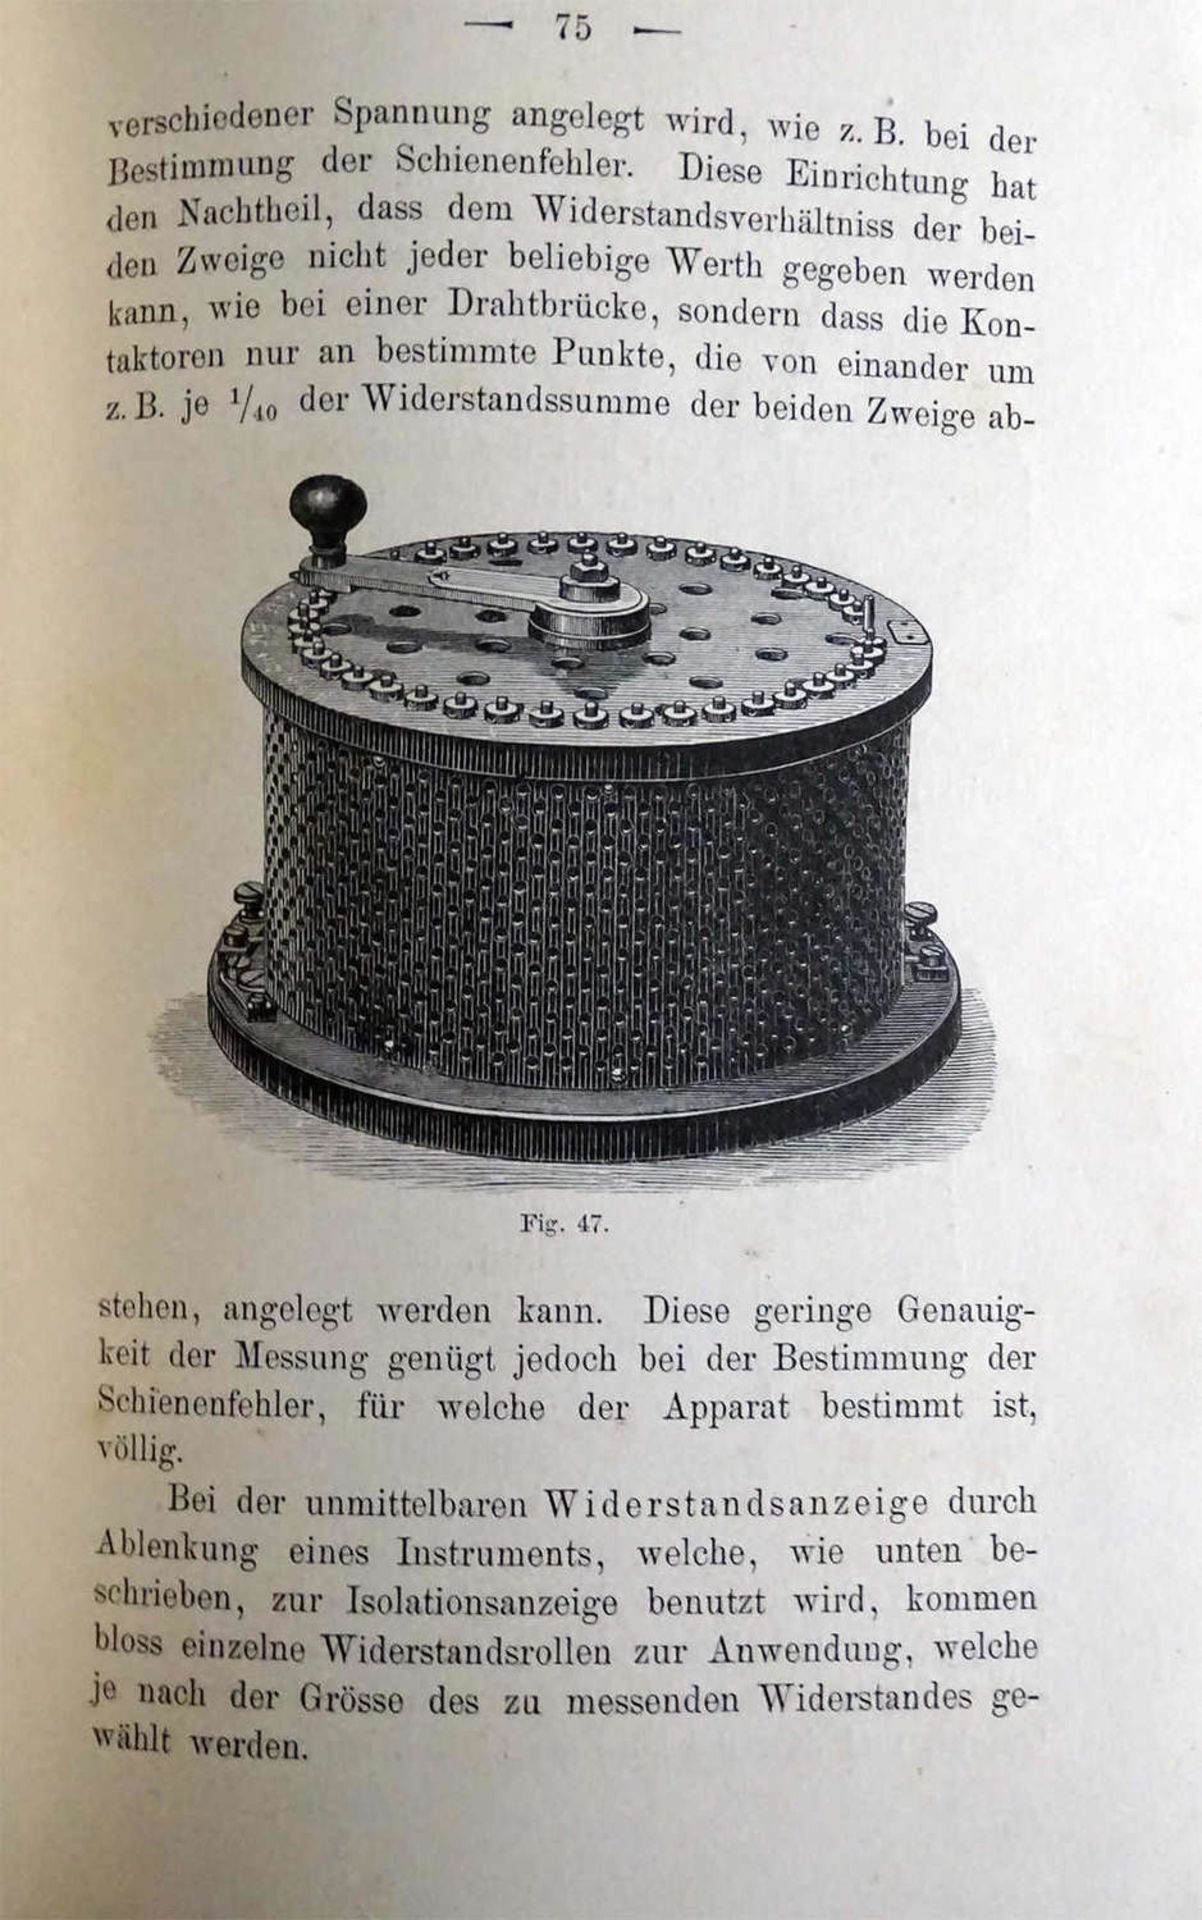 Dr. O. Fröhlich, Über Isolations- und Fehlerbestimmungen an elektrischen Anlagen, 1906Dr. O. - Image 2 of 3